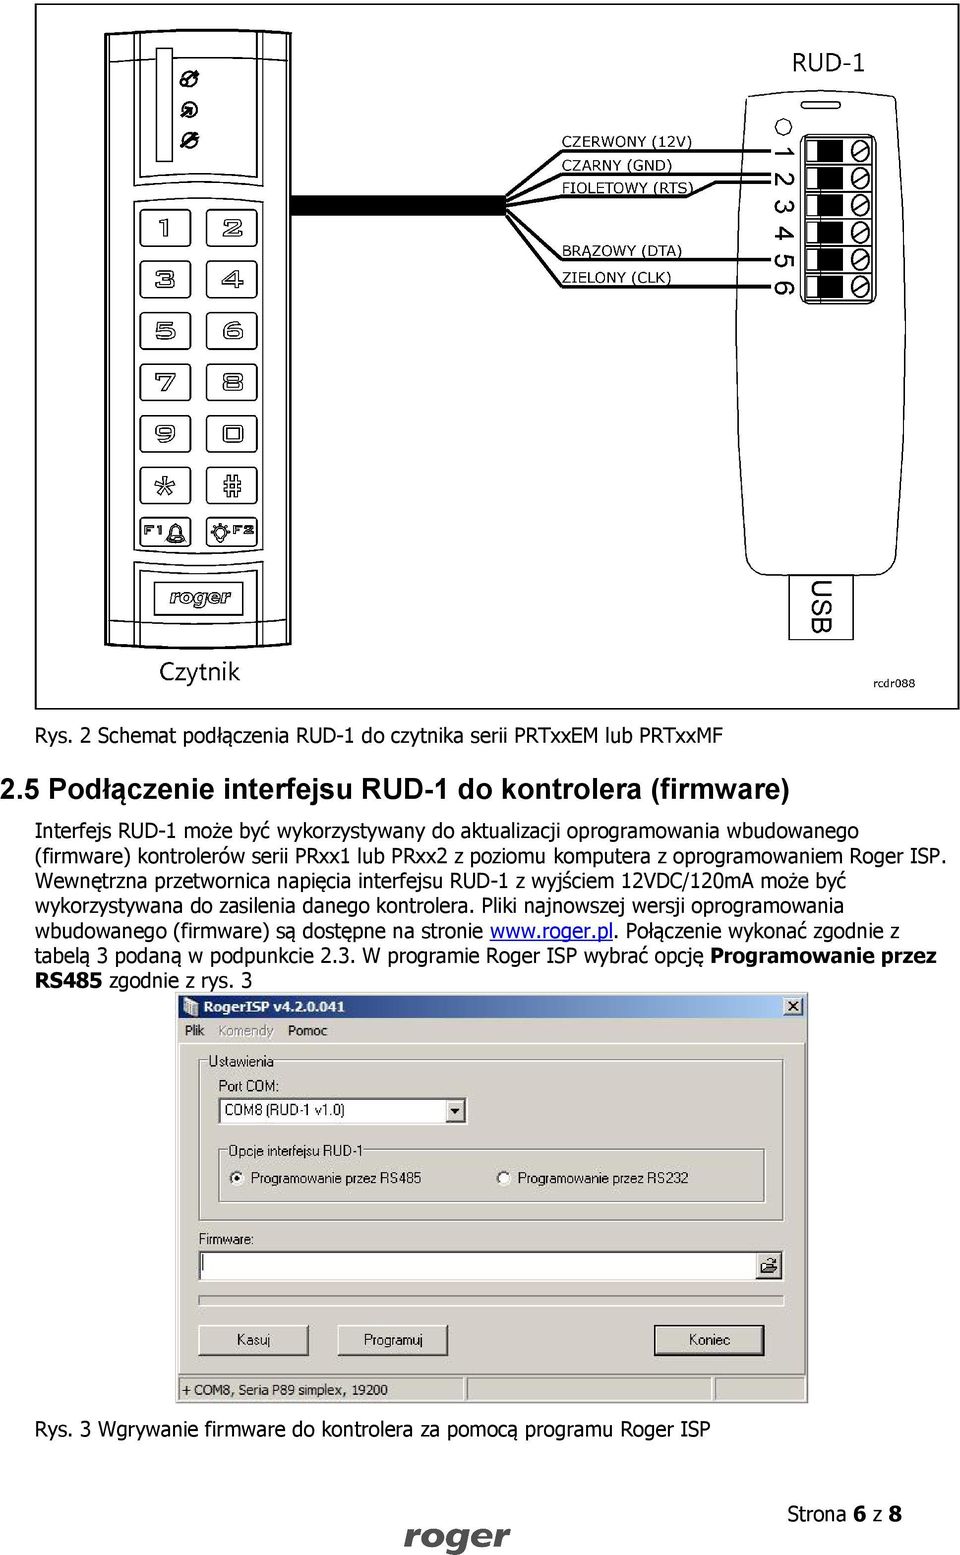 poziomu komputera z oprogramowaniem Roger ISP. Wewnętrzna przetwornica napięcia interfejsu RUD-1 z wyjściem 12VDC/120mA może być wykorzystywana do zasilenia danego kontrolera.